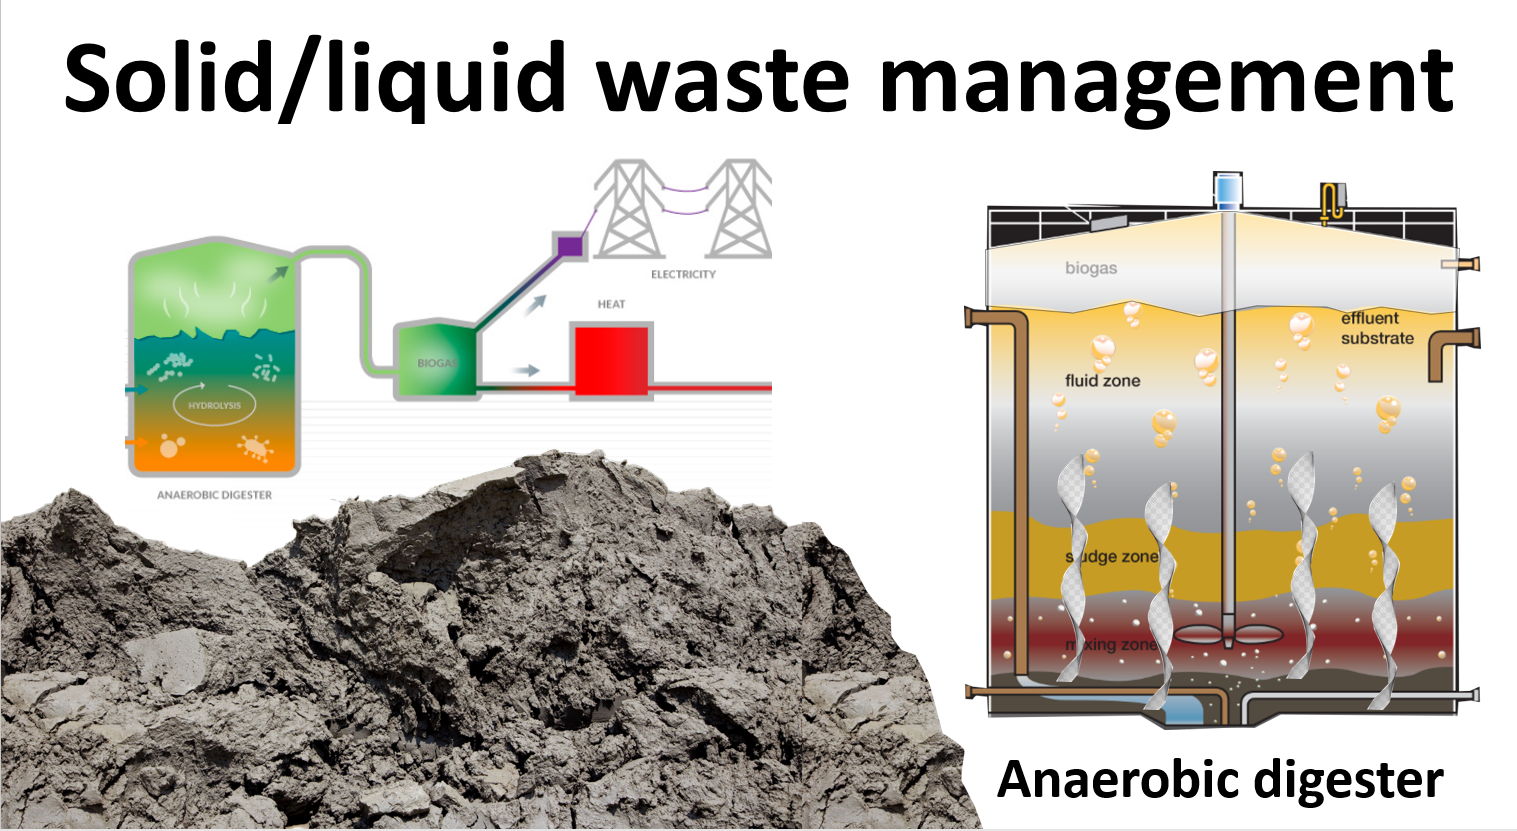 Solid liquid waste management: Waste sludge handling